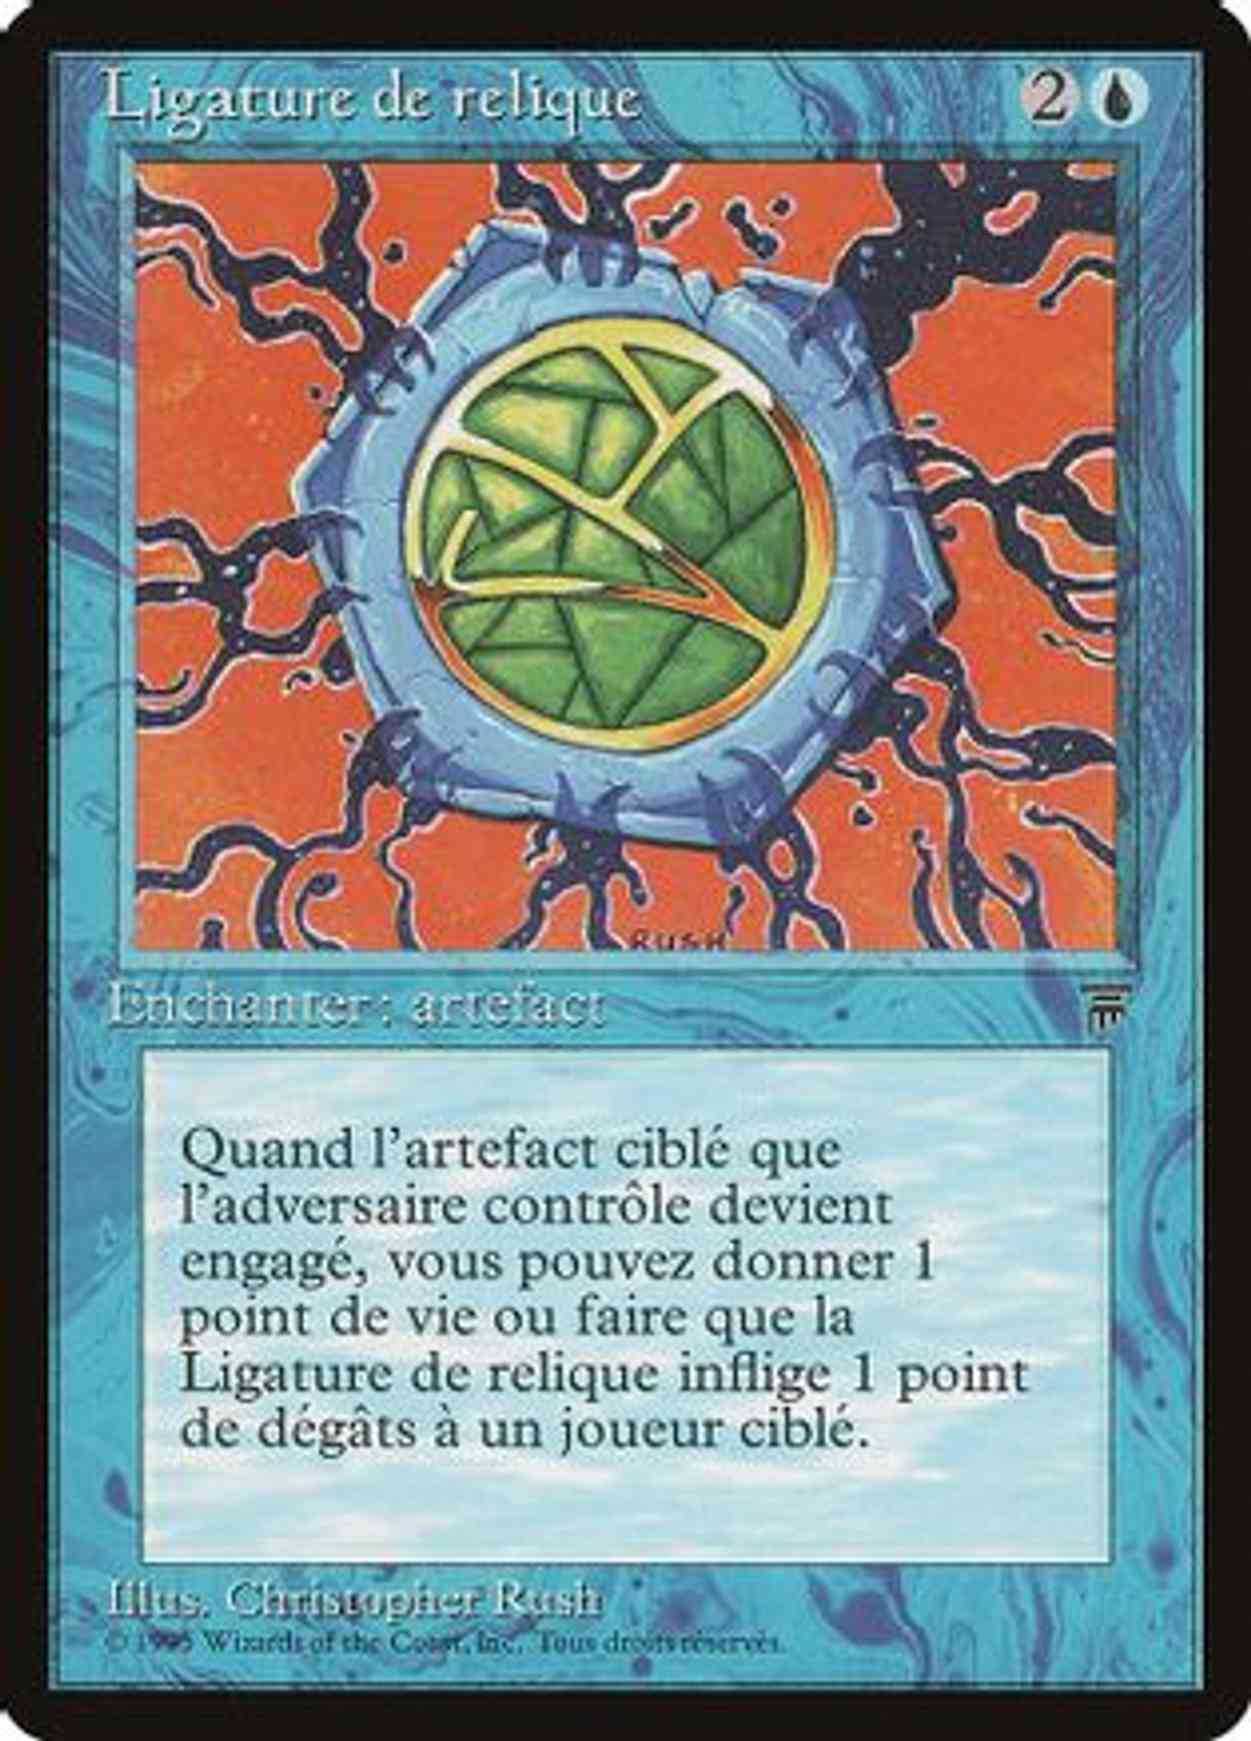 Relic Bind (French) - "Ligature de relique" magic card front